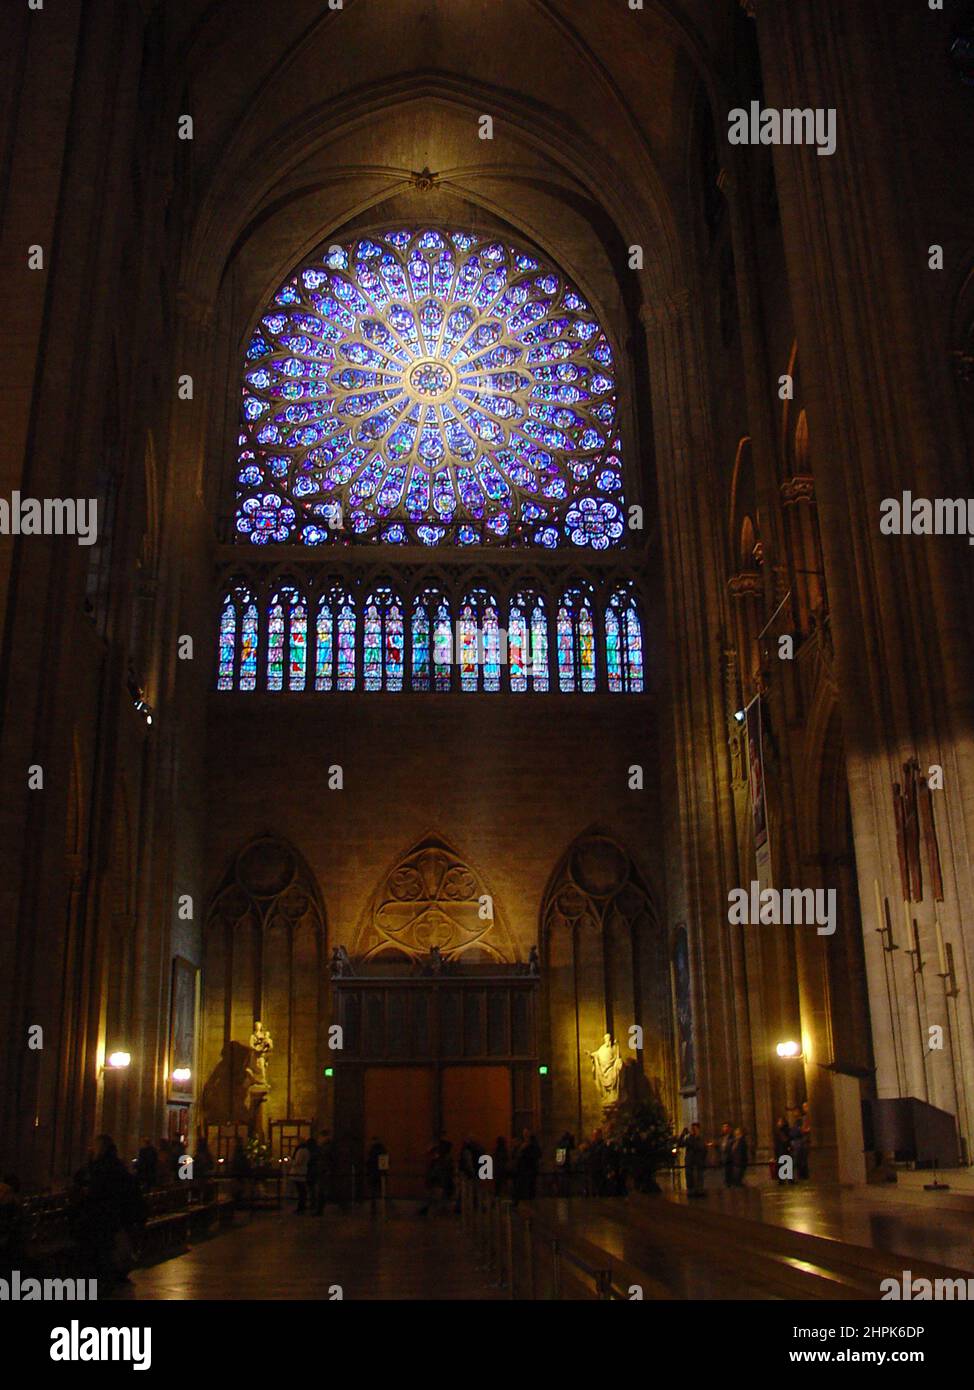 Gotischer Innenraum von Notre Dame, unserer Lieben Frau von Paris, mittelalterliche katholische Kathedrale auf der Île de la Cité vor dem Brand im April 15, 2019. Stockfoto